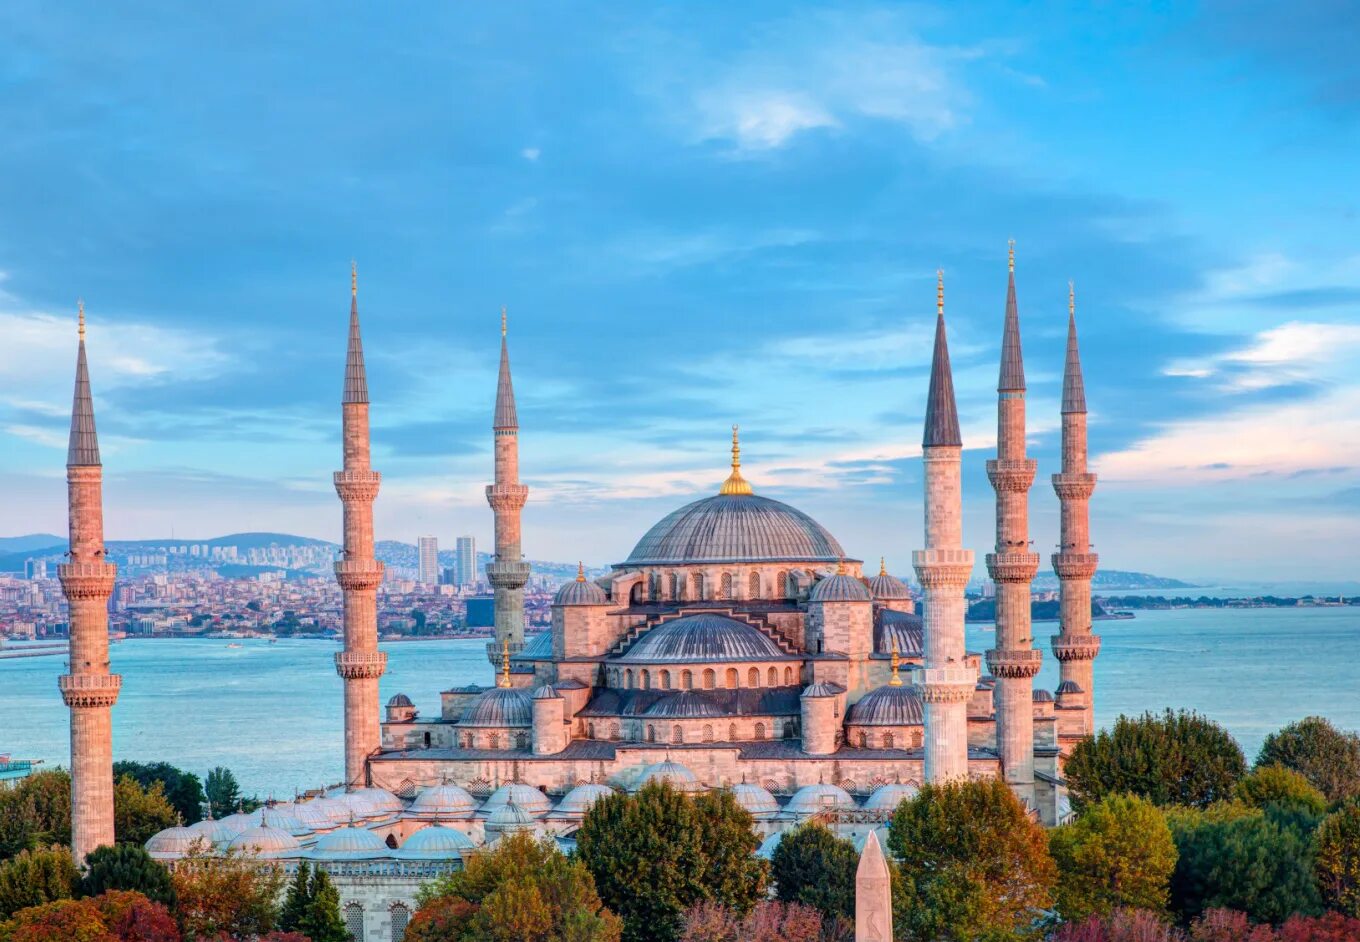 Best turkey. Стамбул голубая мечеть Босфор. Мечеть Султанахмет в Стамбуле. Султанахмет Стамбул осень. Стамбул Босфор Ортакей.